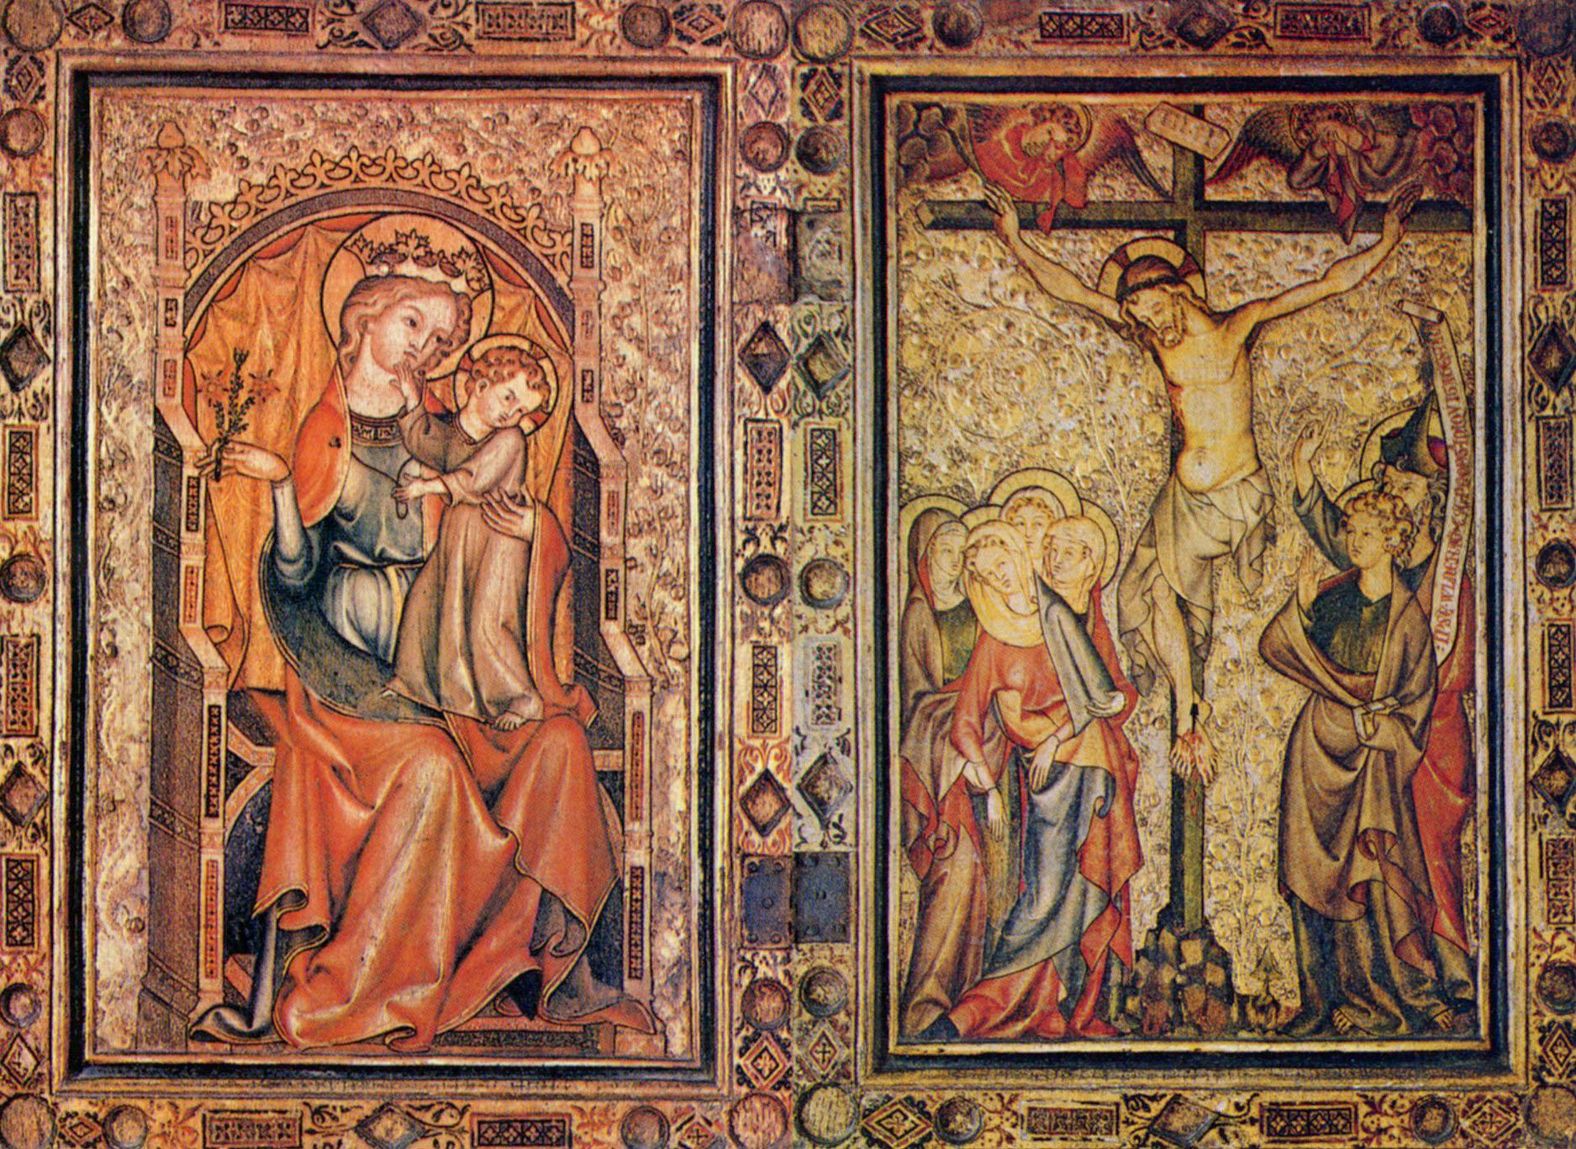 Klner Maler um 1350: Thronende Maria und Kreuzigung